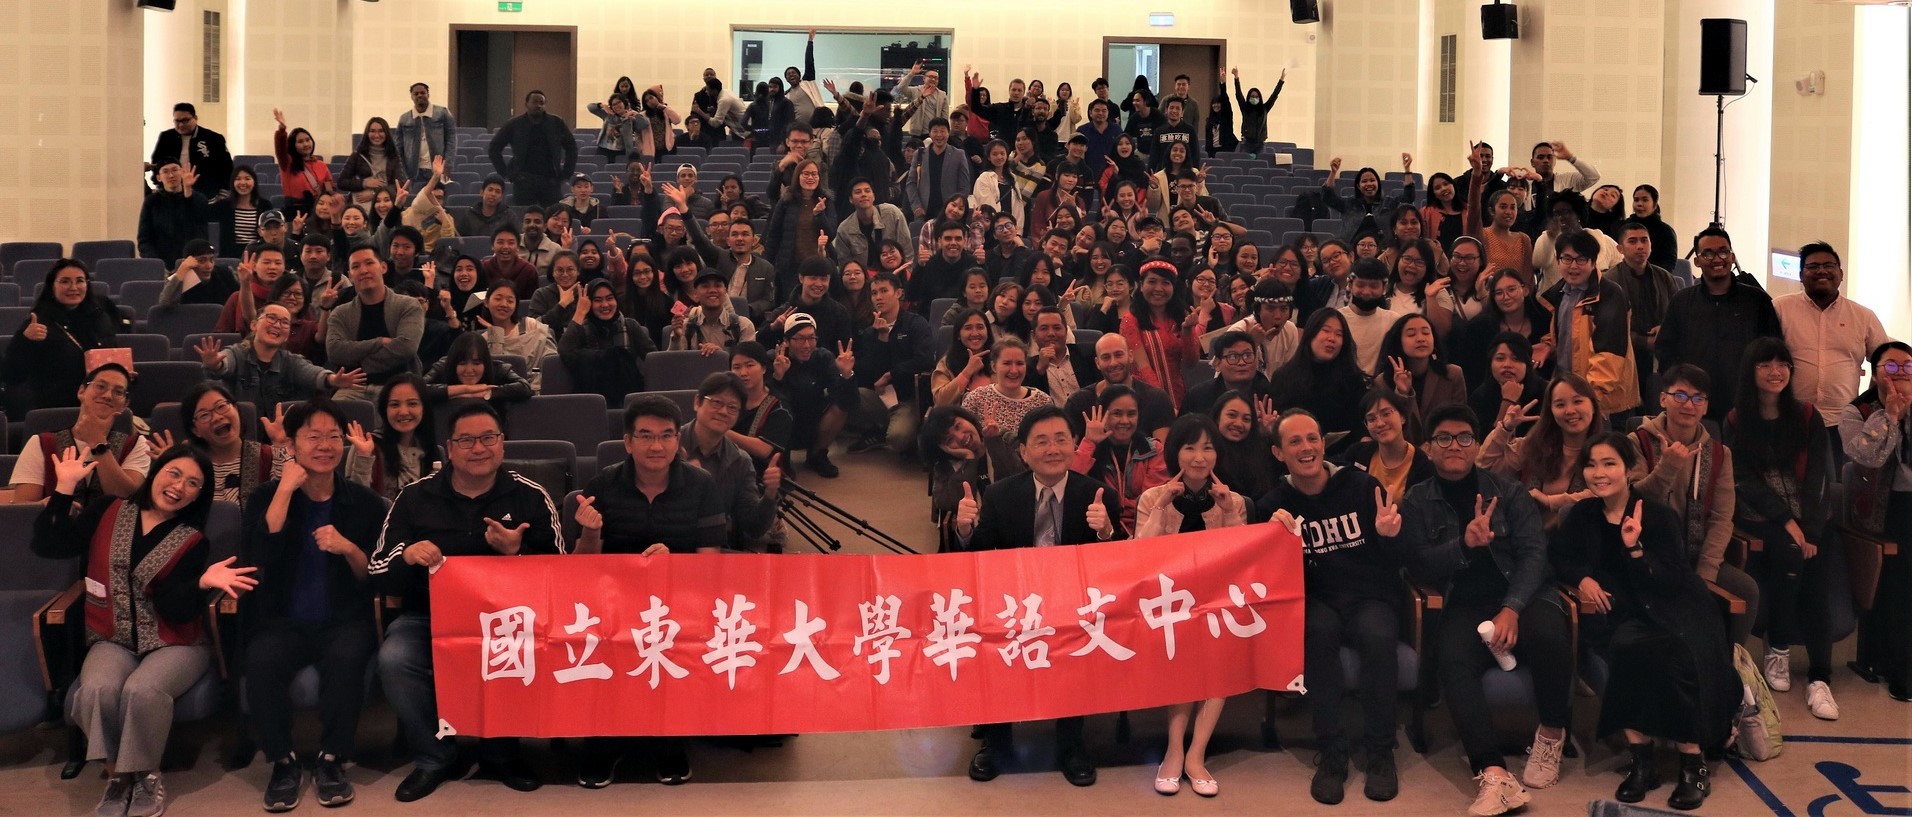 東華大學2019華語歌唱比賽大合照